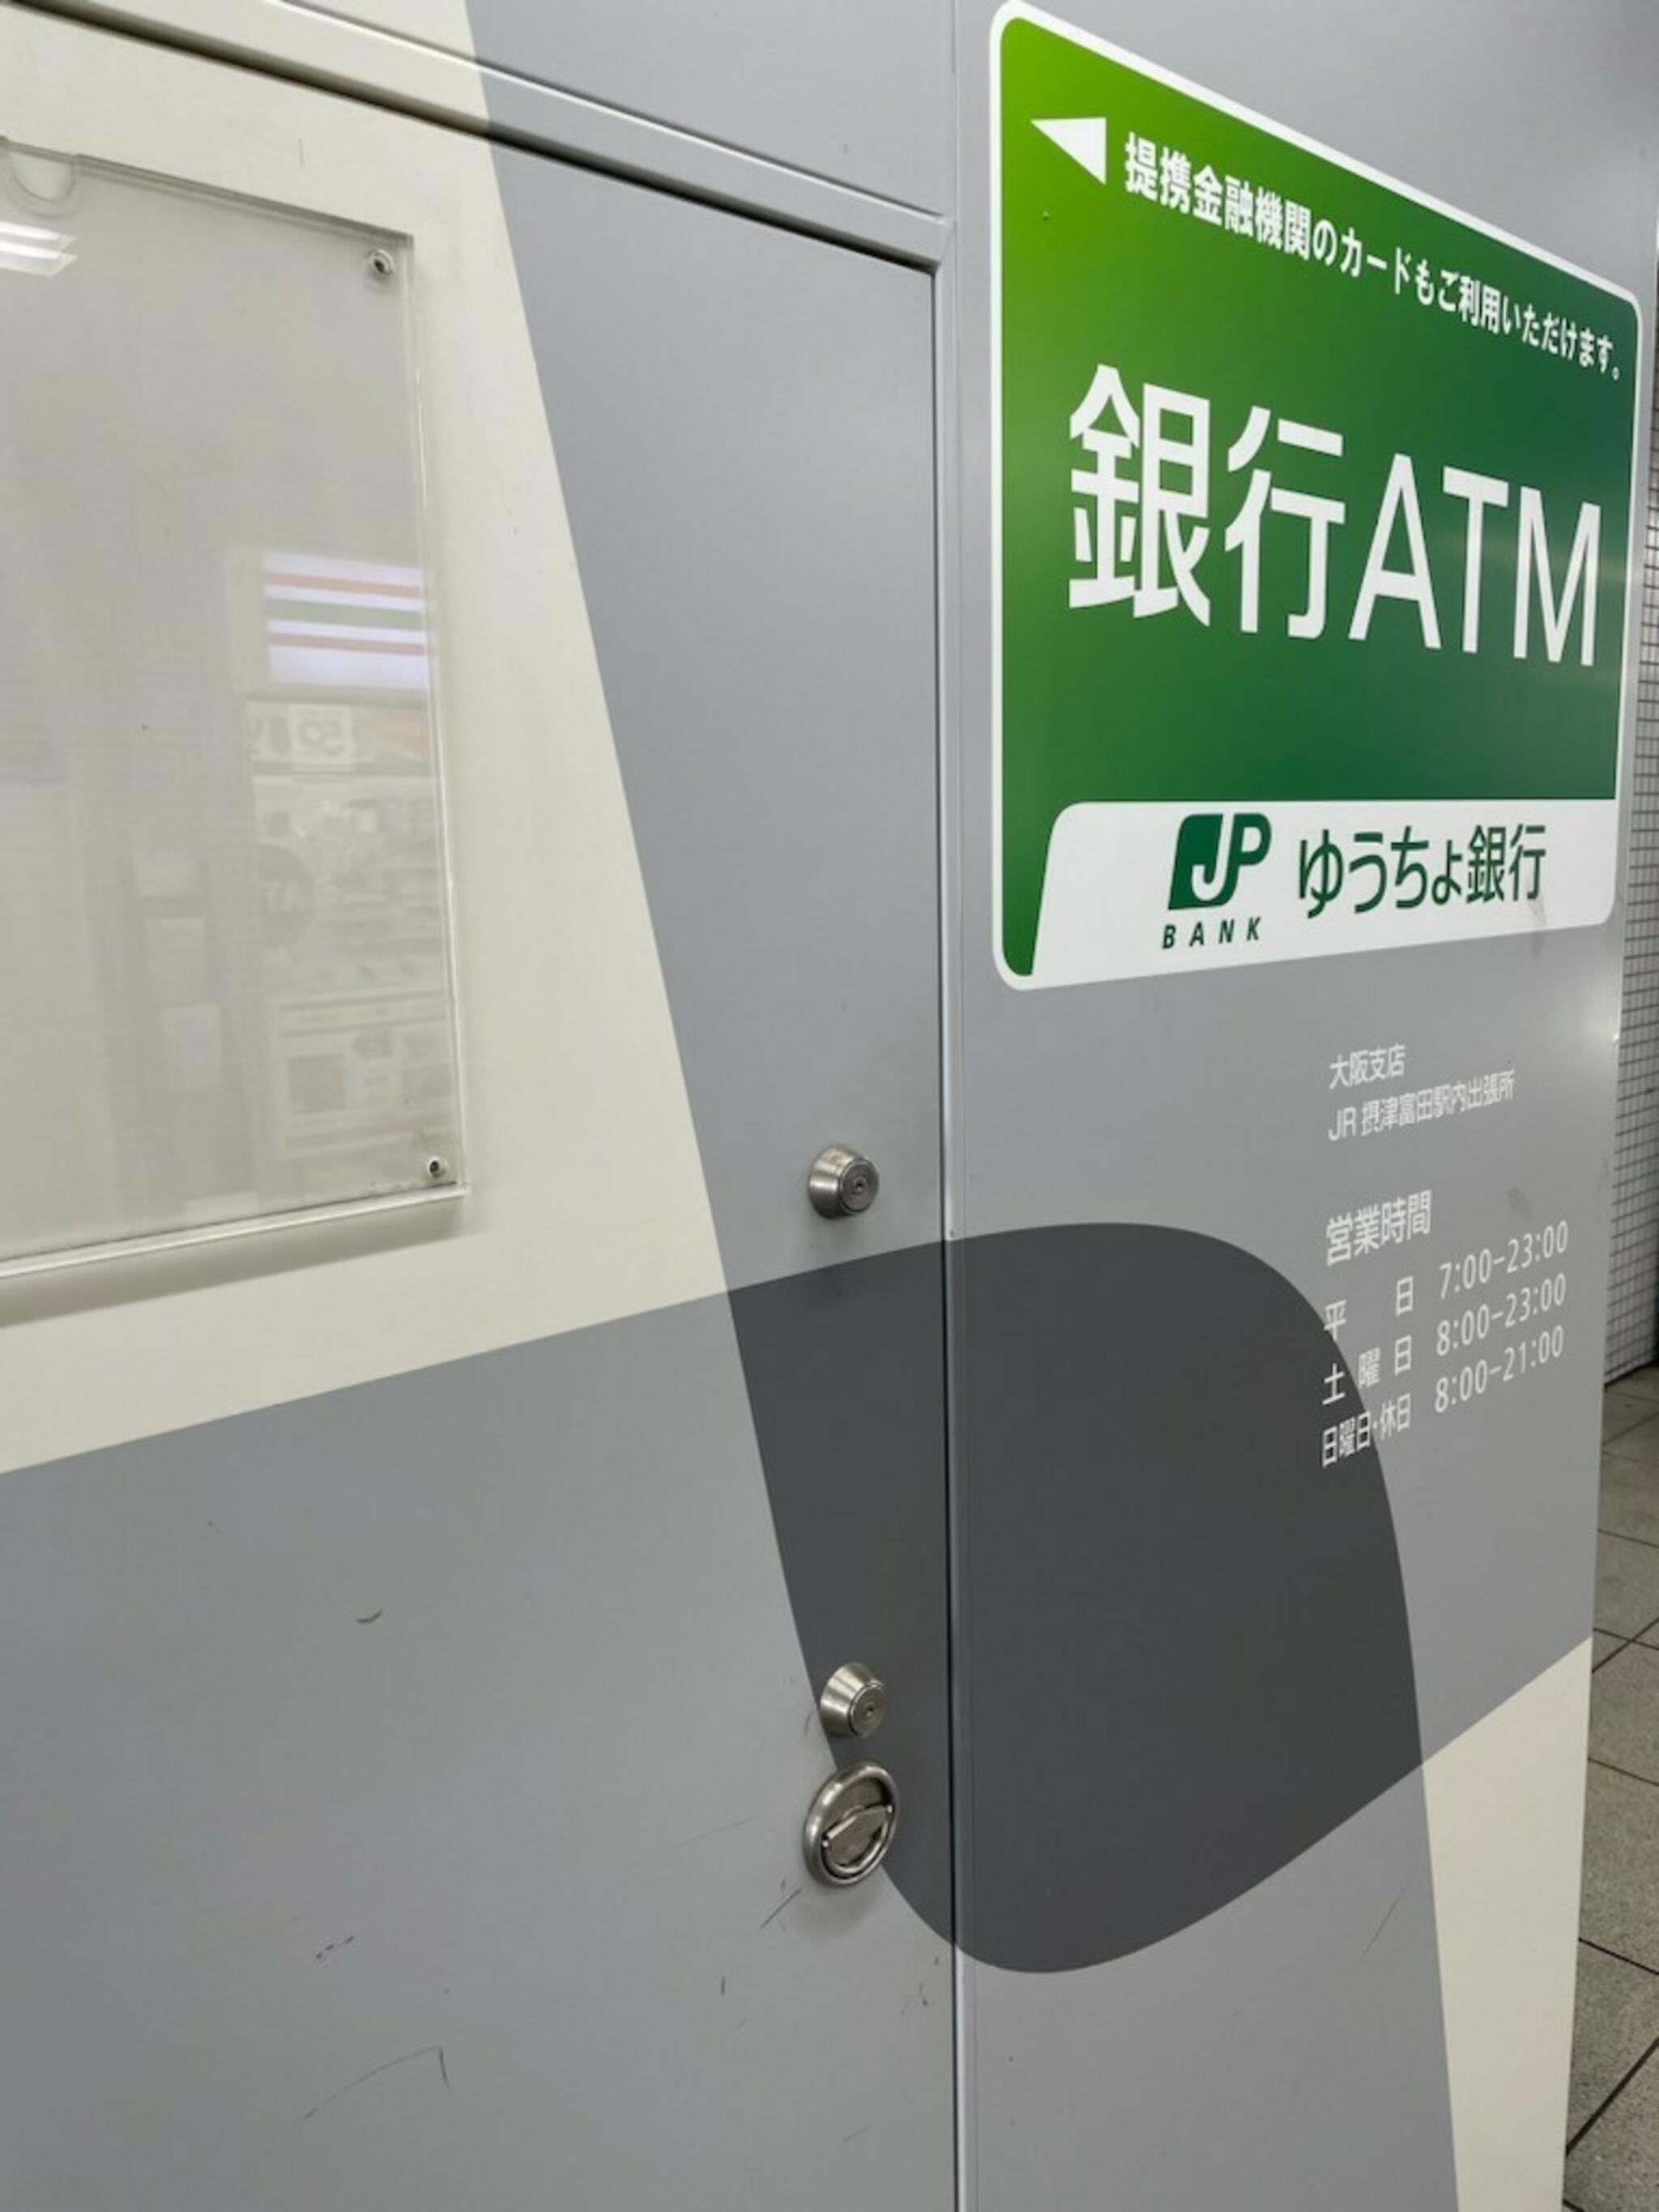 ゆうちょ銀行 ATM JR摂津富田駅内出張所の代表写真6